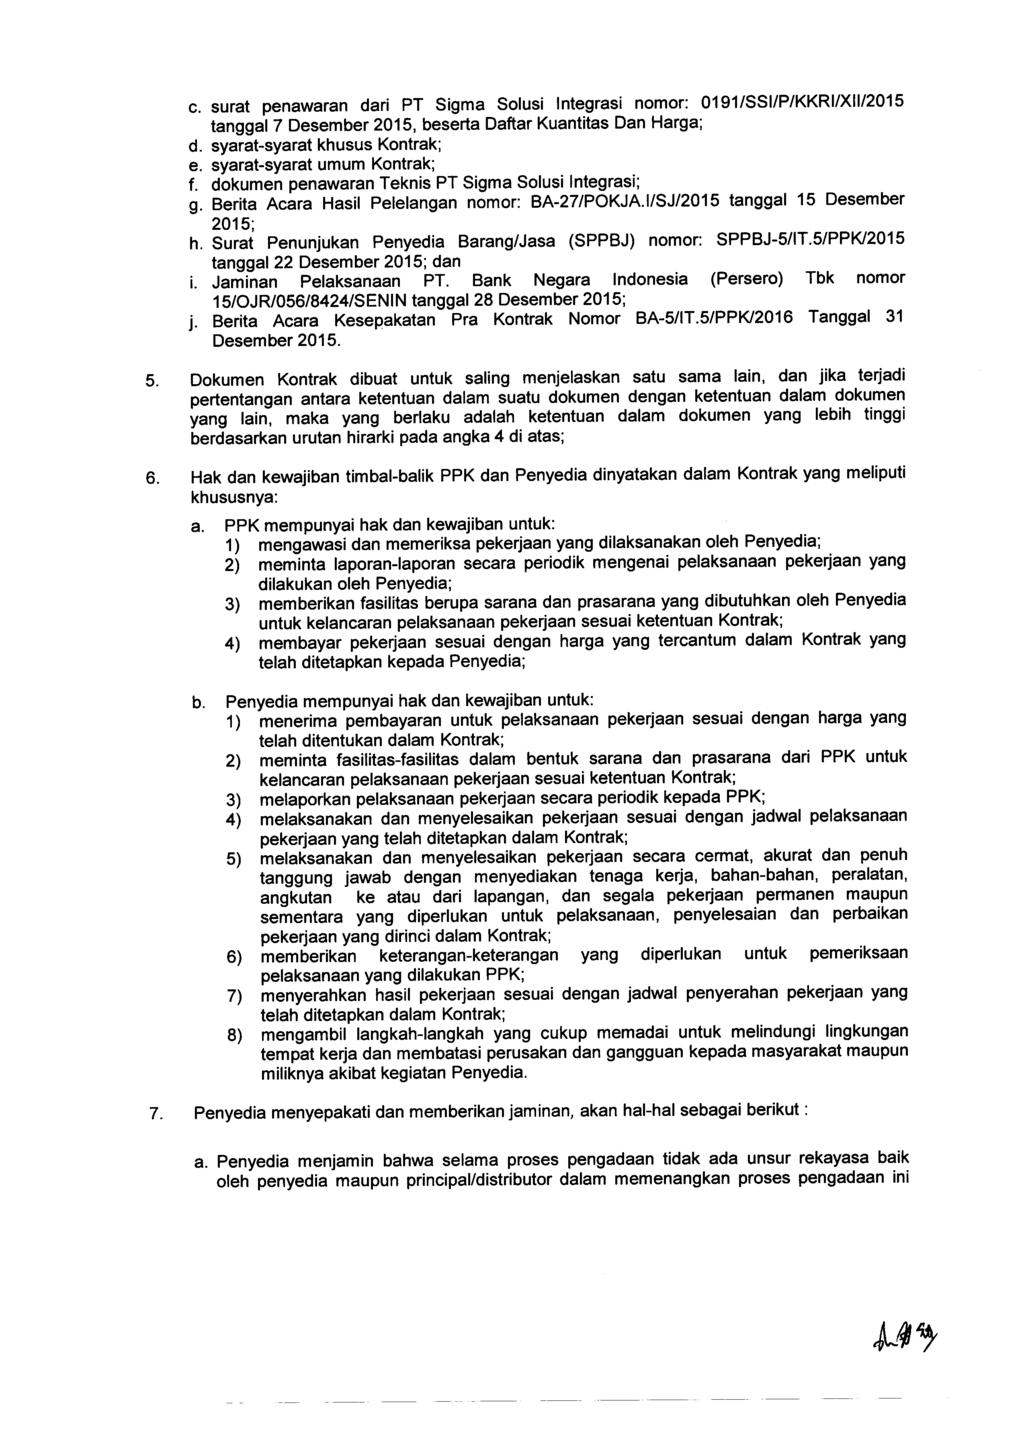 c. surat penawaran dari PT Sigma Solusi Integrasi nomor: 0191/SSI/P/KKRI/XII/2015 tanggal 7 Desember 2015, beserta Daftar Kuantitas Dan Harga; d. syarat-syarat khusus Kontrak; e.